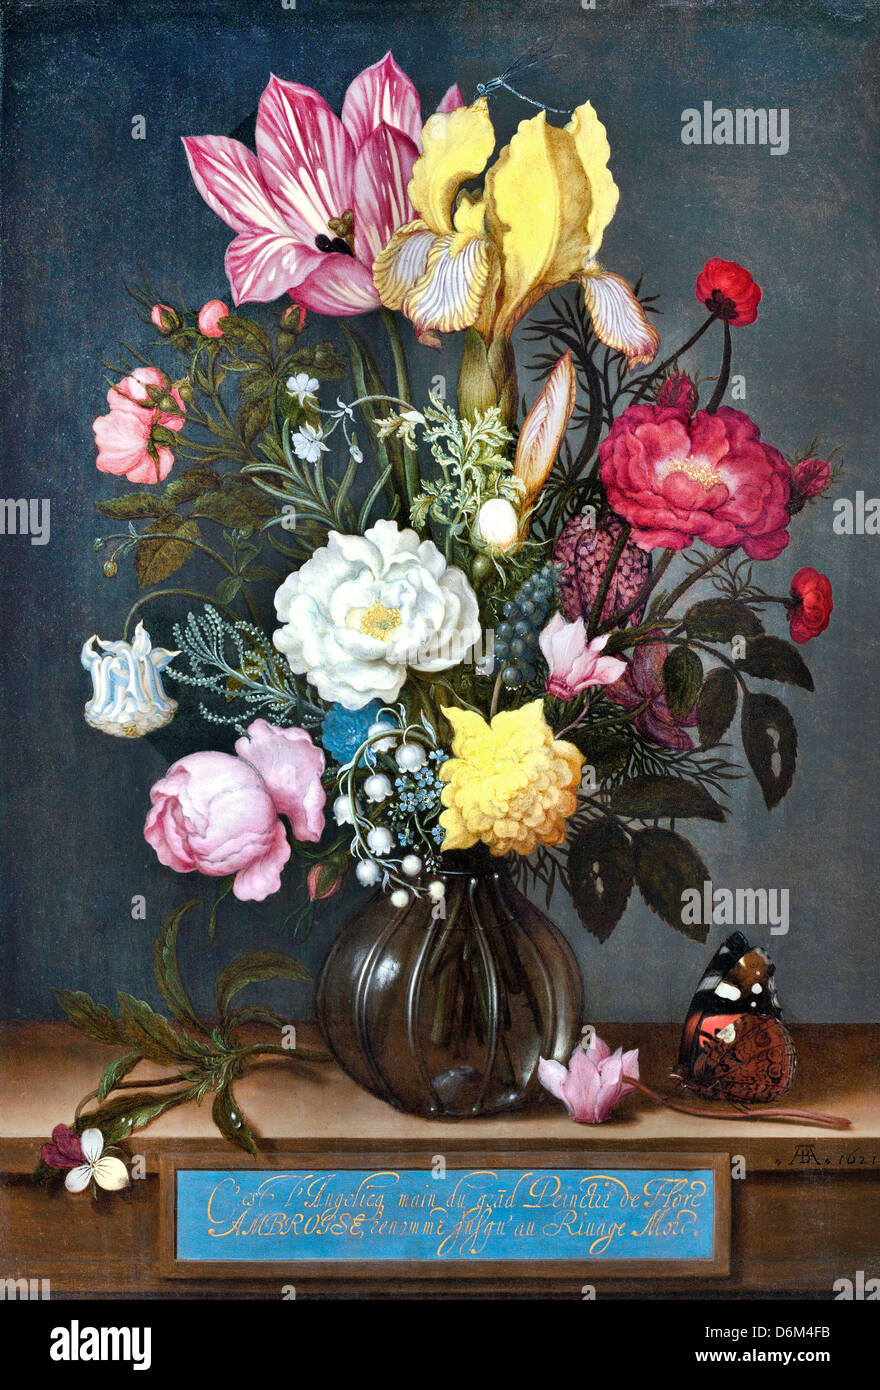 Ambrosius Bosschaerts l'Aîné, Bouquet de fleurs dans un vase de verre 1621 huile sur cuivre. National Gallery of Art, Washington, D.C. Banque D'Images